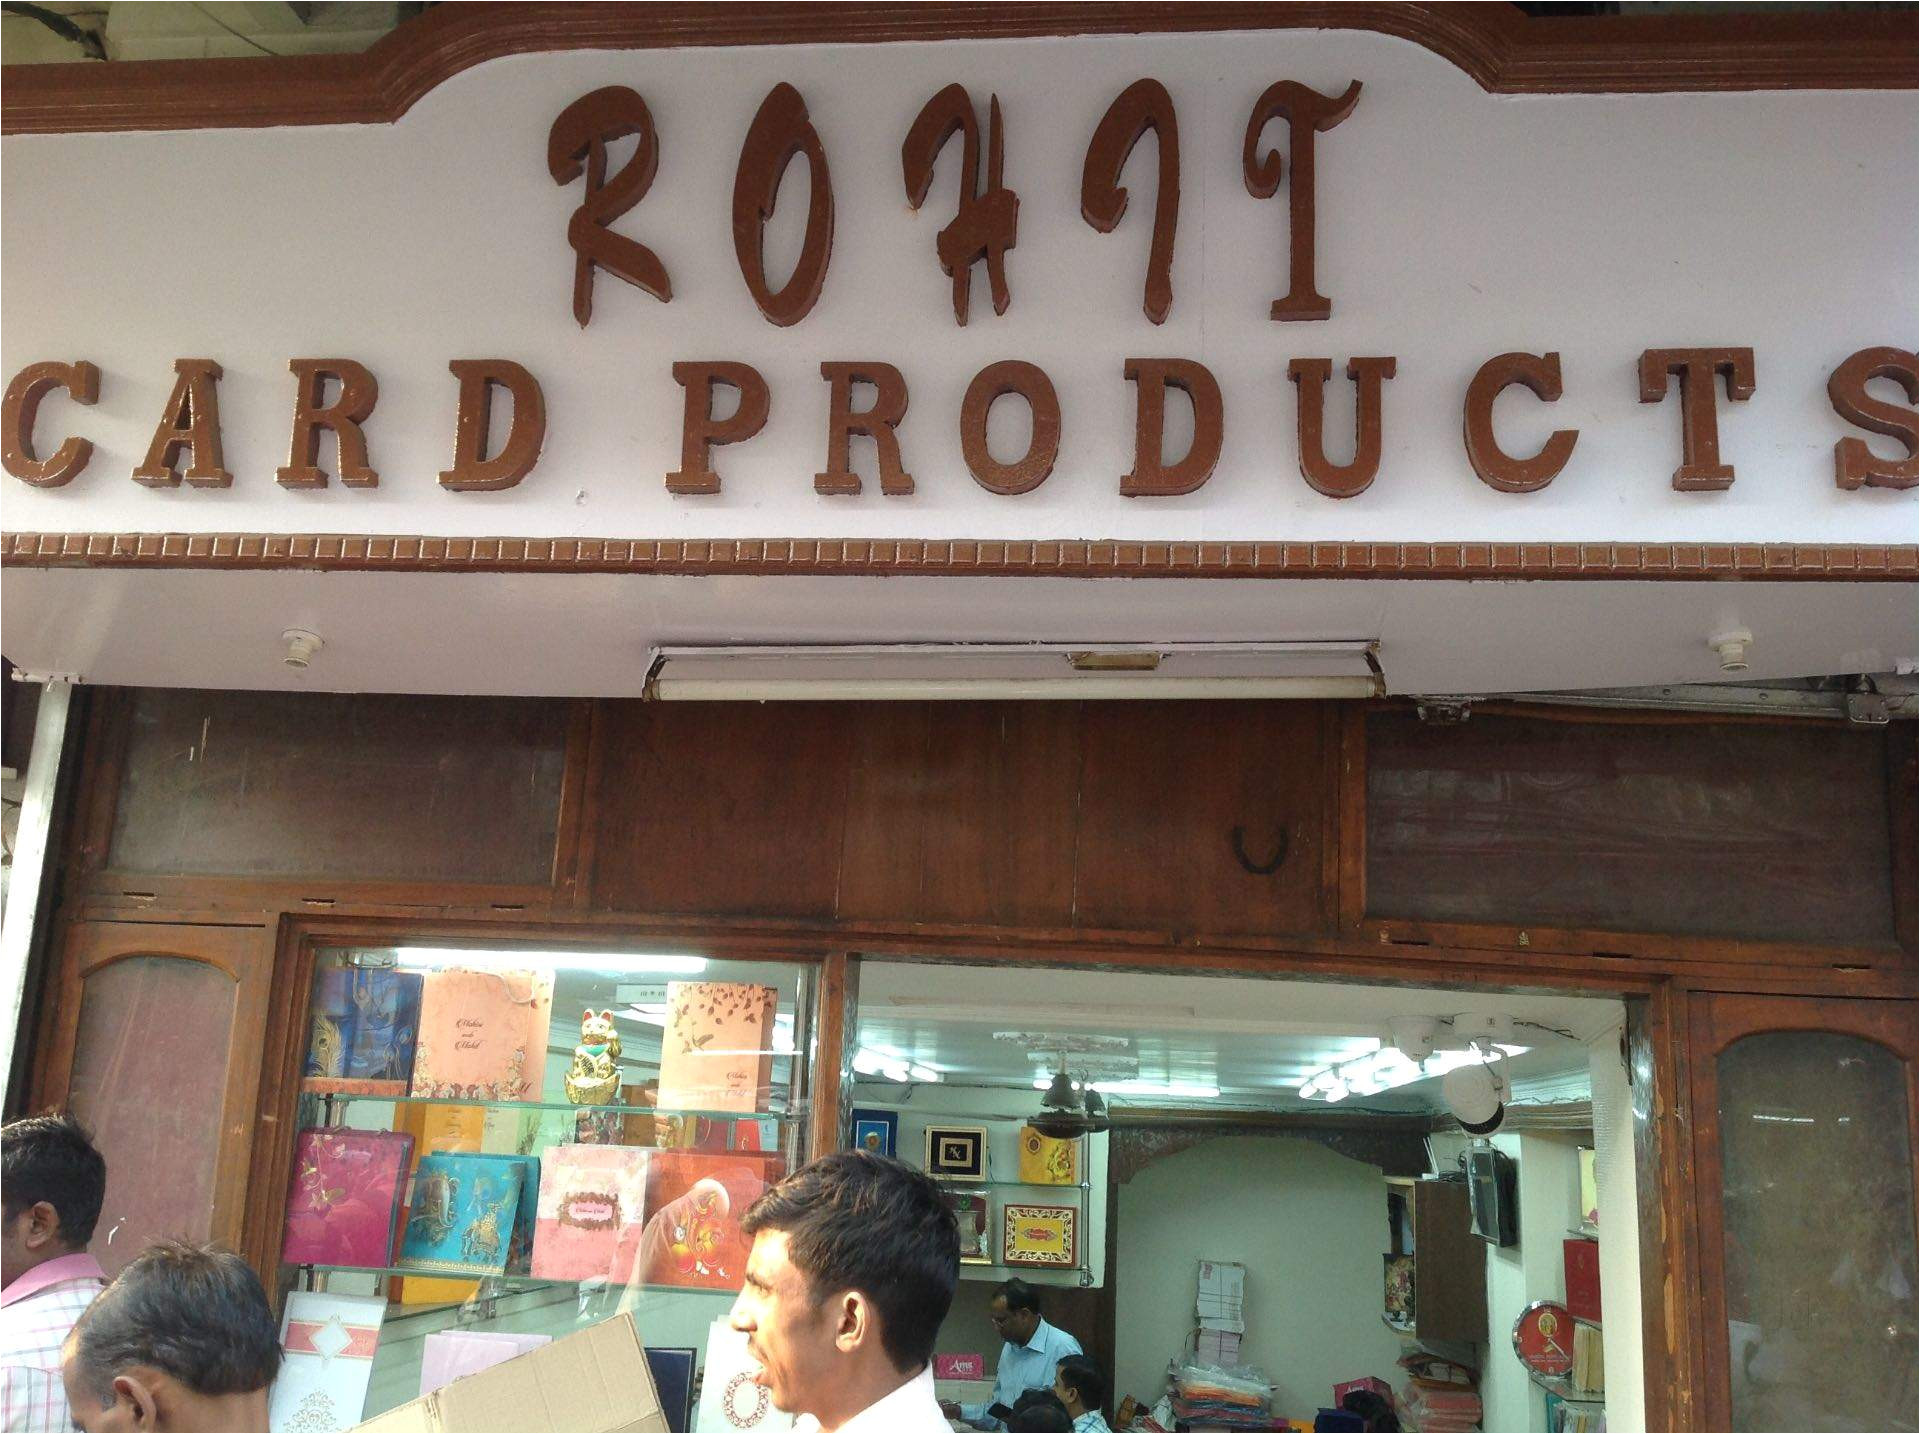 rohit card products chawri bazar delhi wedding card printers 0i1gsl22a2 jpg